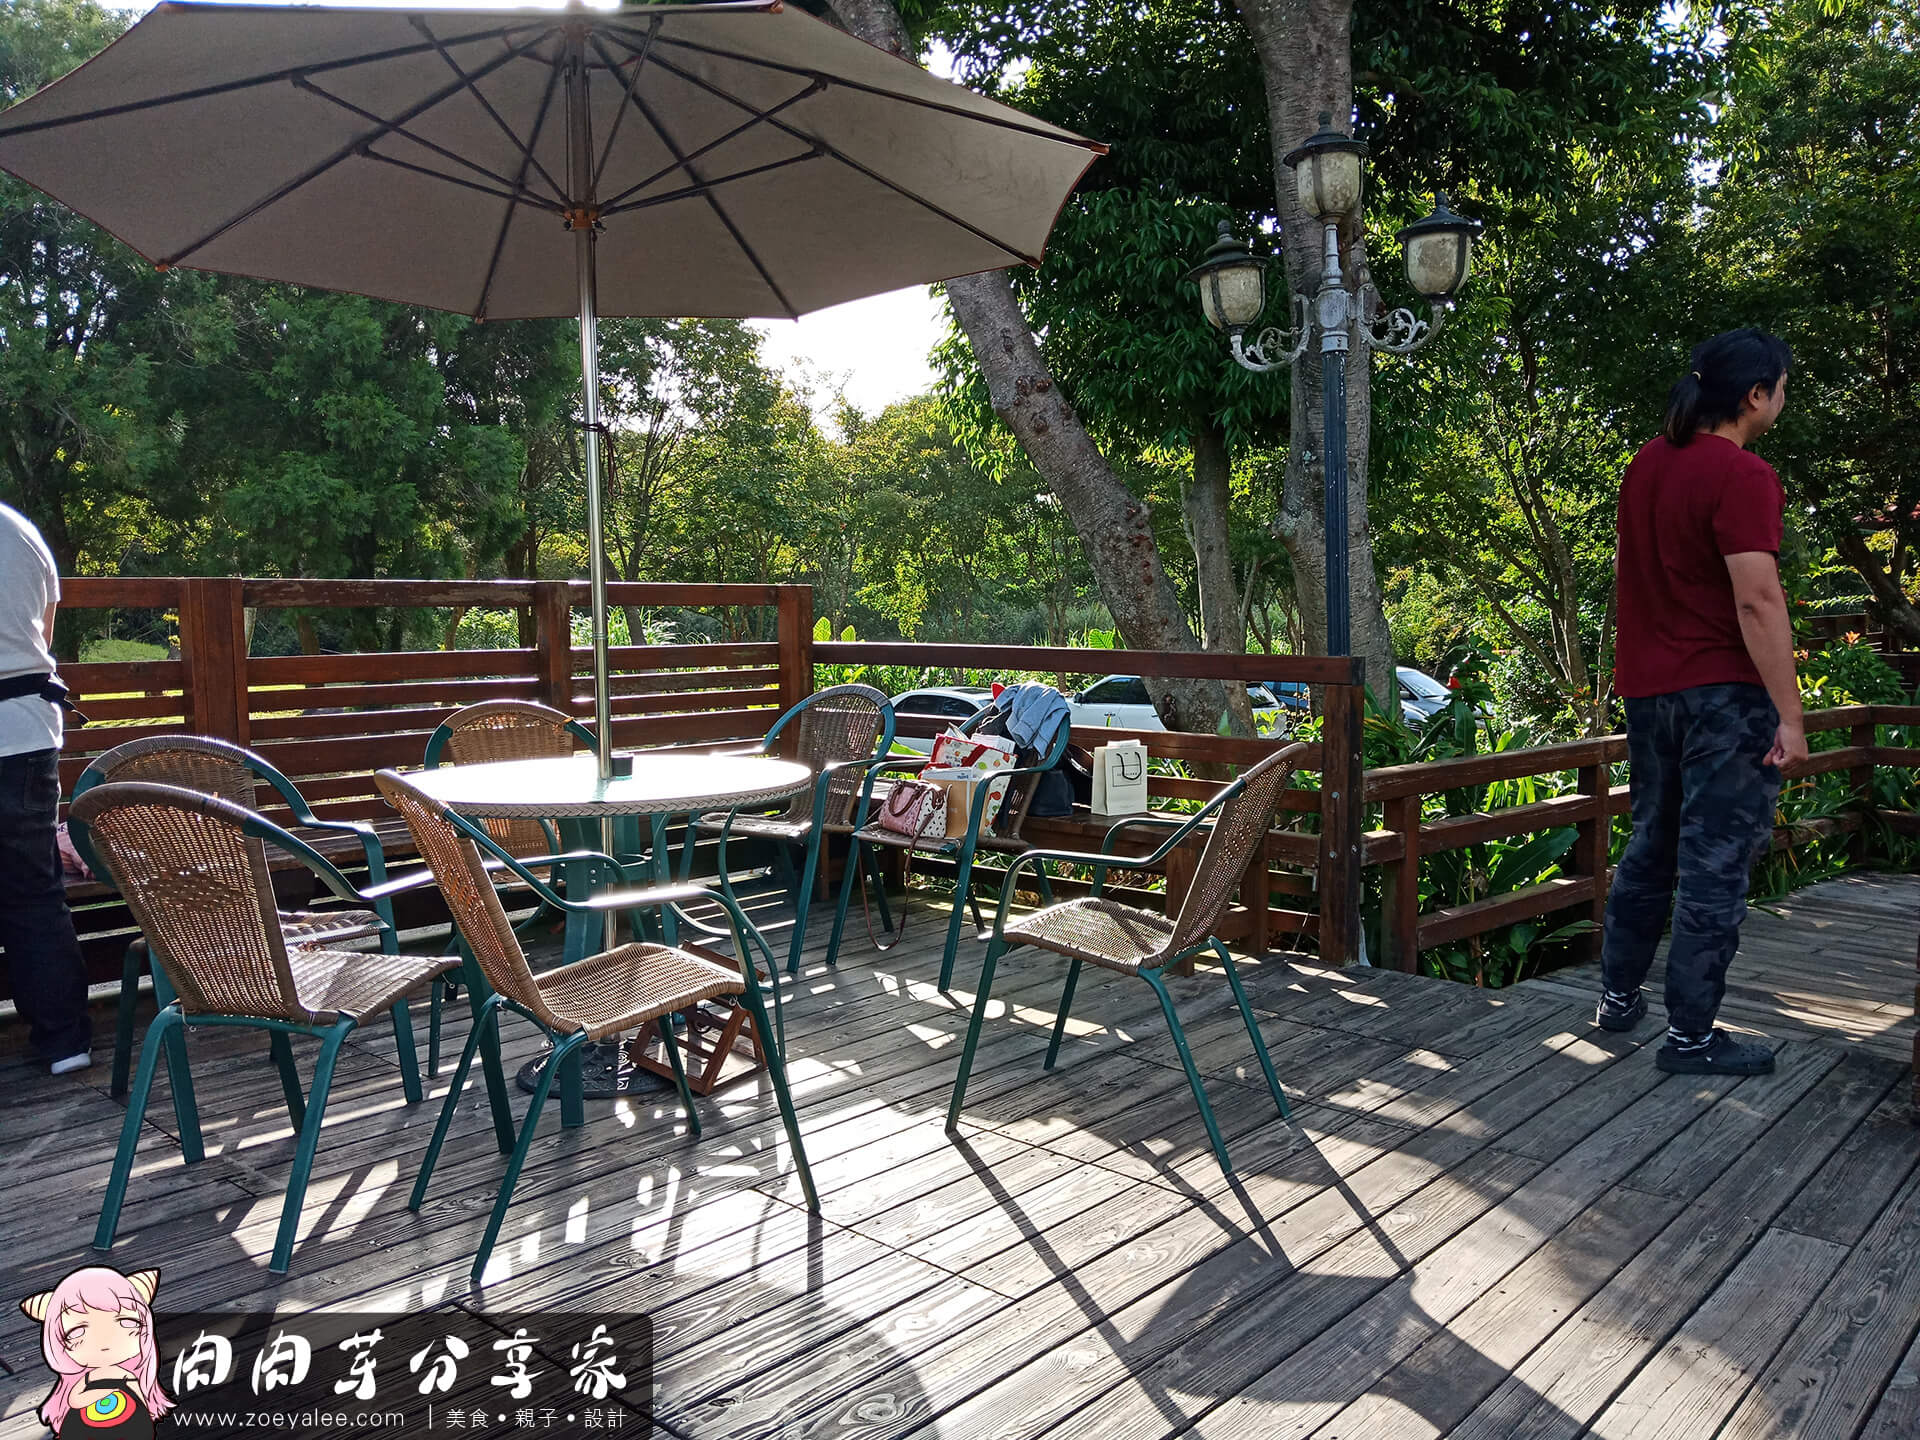 壹等賞景觀茶園餐廳錦鯉池旁邊休息區，有著陽傘與明媚陽光